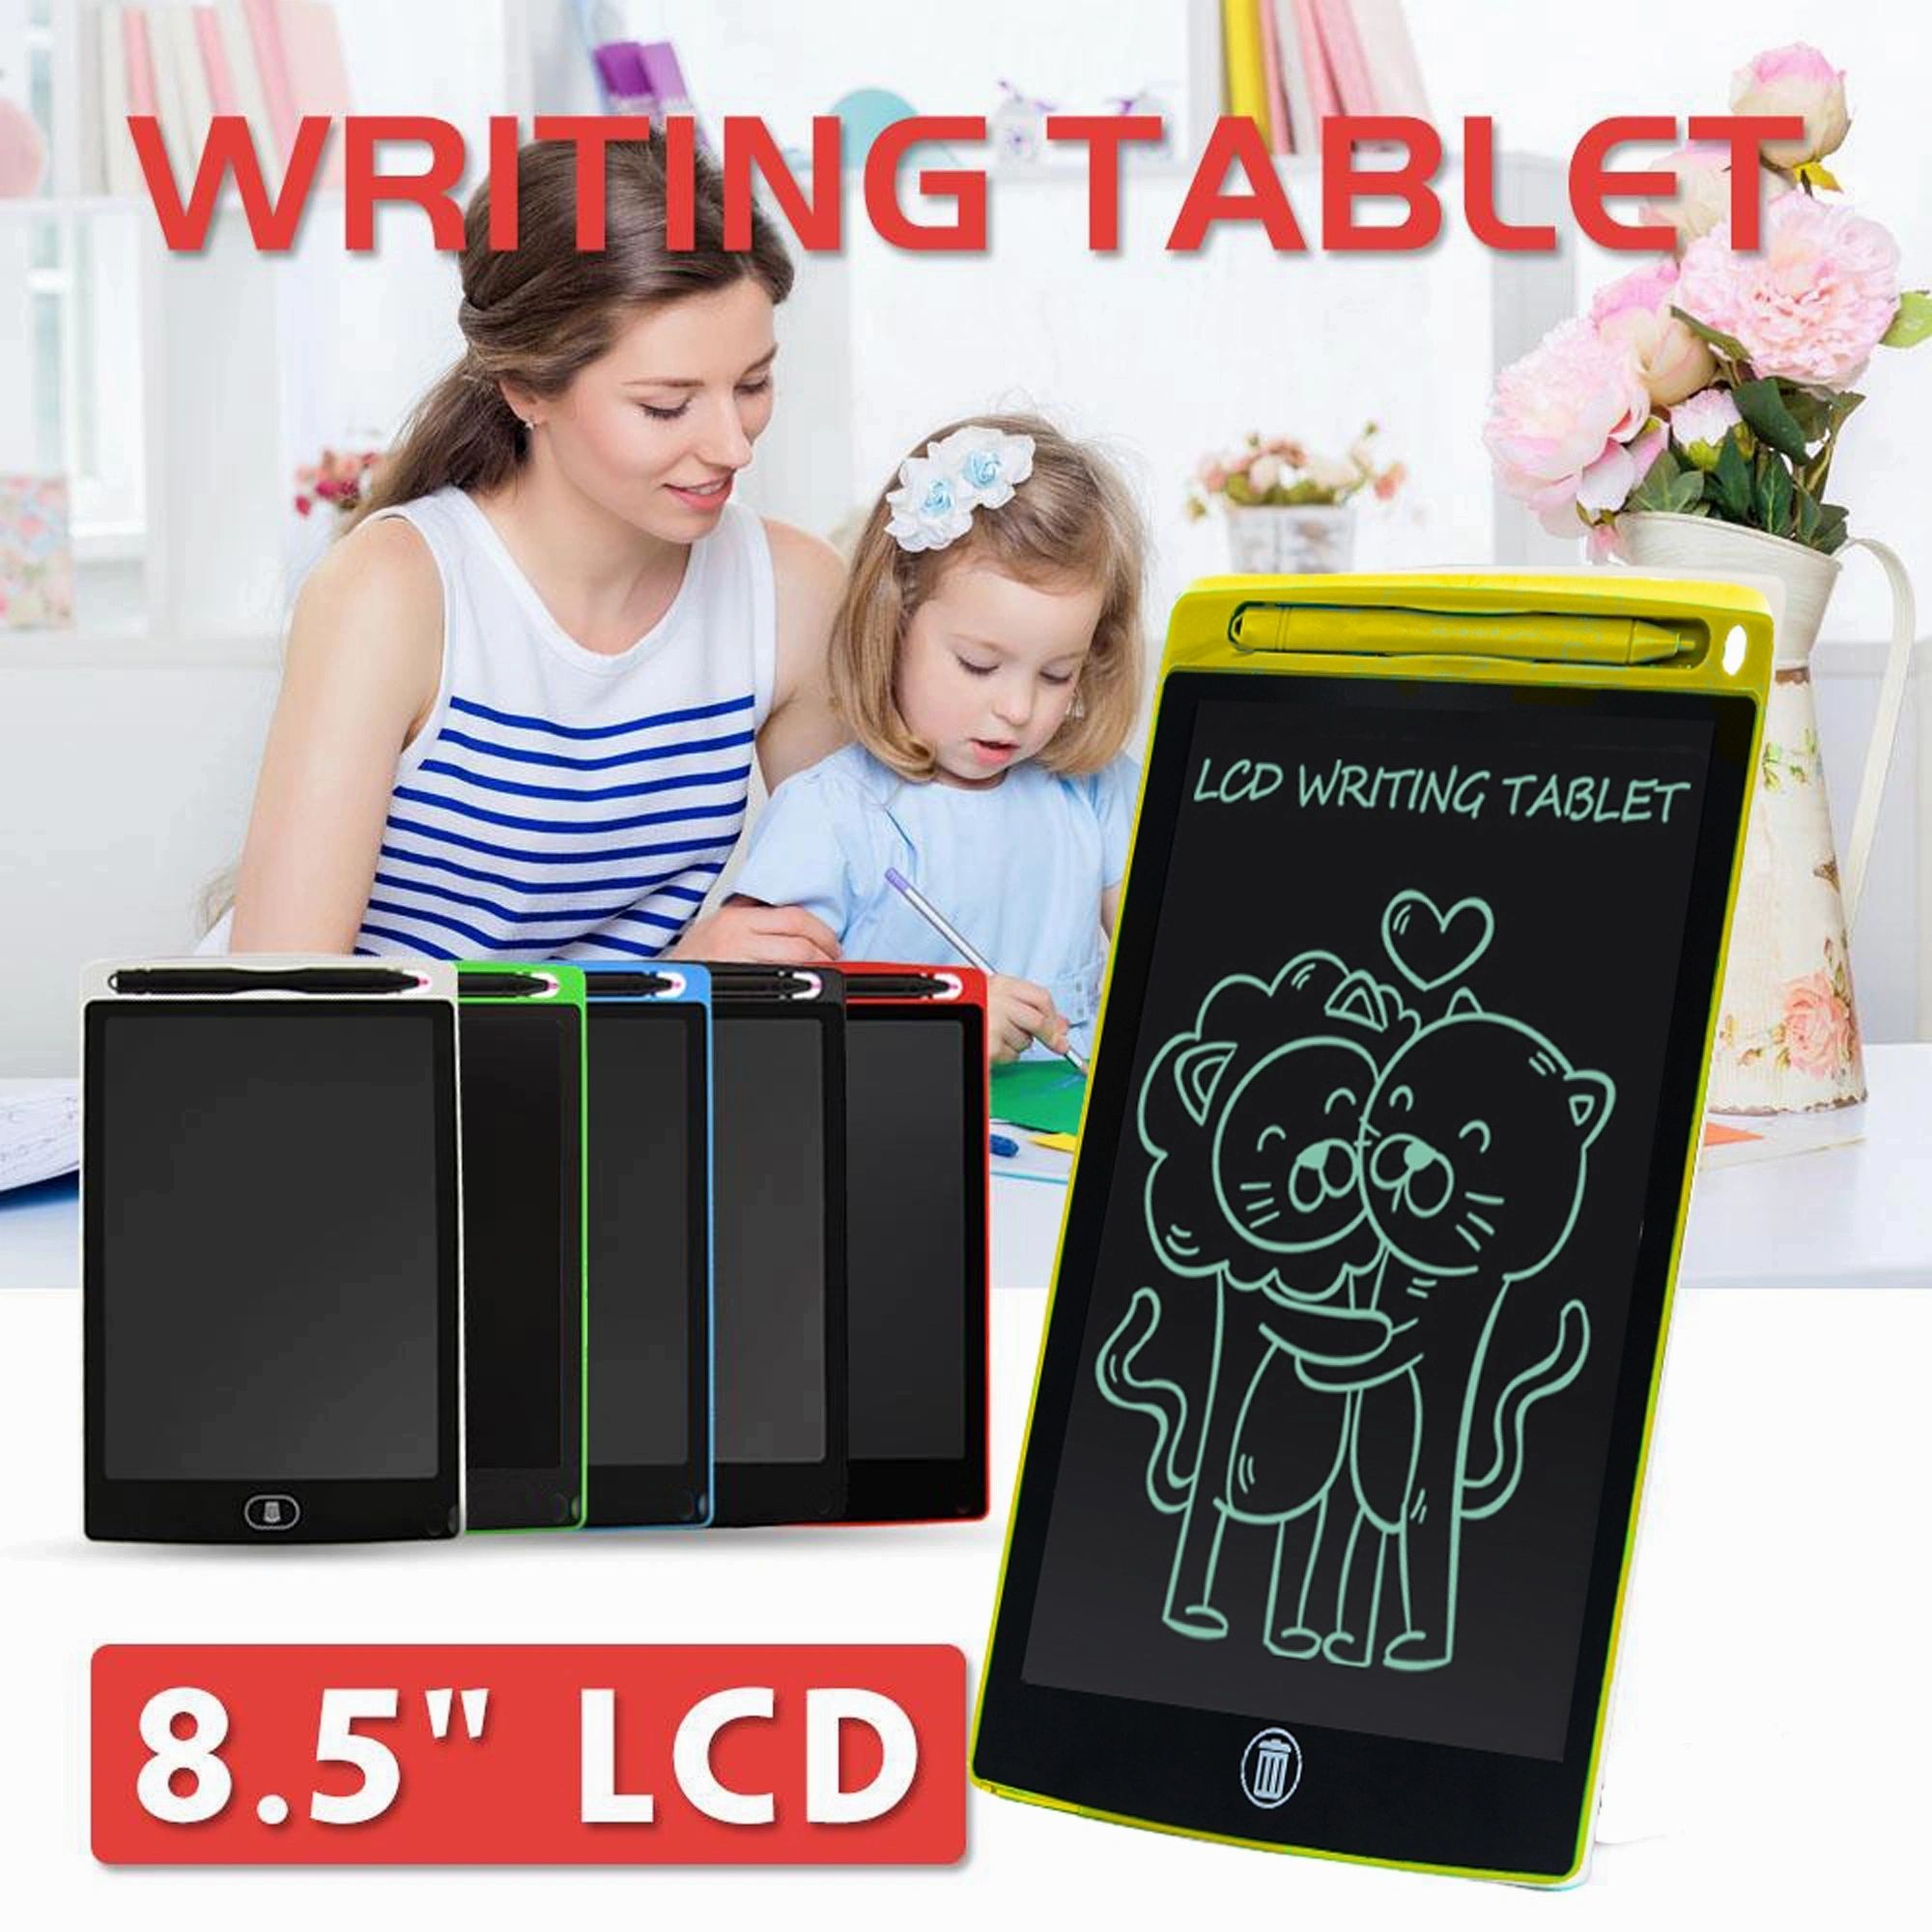 8.5นิ้ว LCD แท็บเล็ตสำหรับเขียนการศึกษา Board ภาพวาดดิจิตอลแบบพกพาแผ่นรองเขียนสำหรับเด็กและโน้ตบุ๊คผู้หญิงสำหรับเด็ก